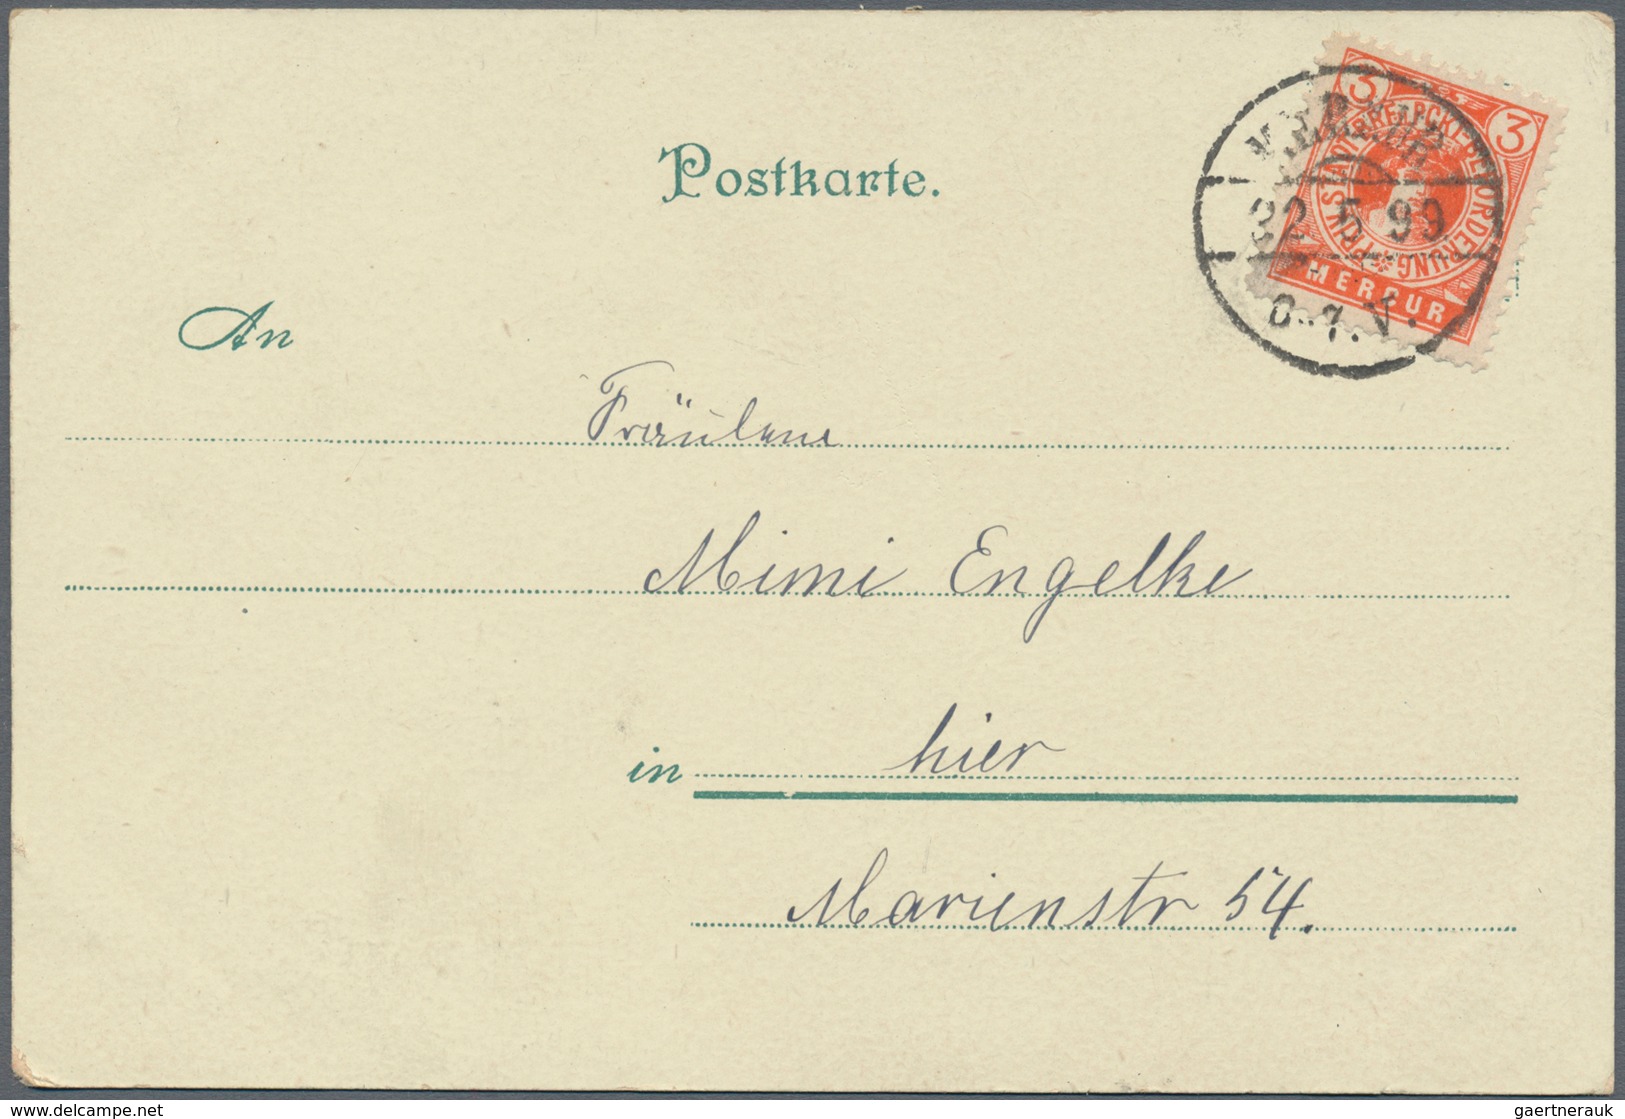 Deutsches Reich - Privatpost (Stadtpost): Flensburg PP Mercur 1899, 1½ Pf. Grün Und 3 Pf. In Karmin& - Private & Local Mails